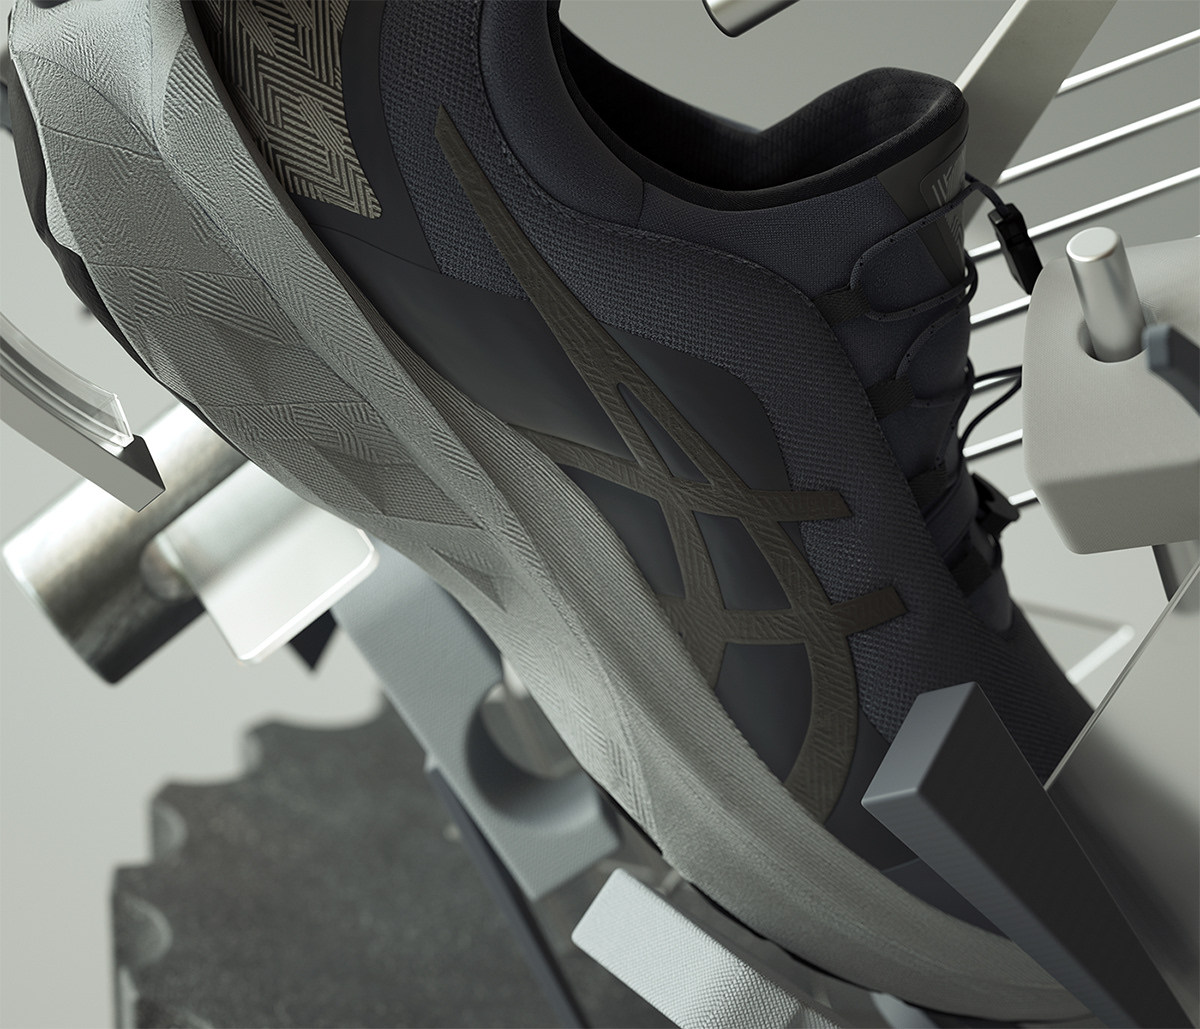 3D cinema4d graphic design  ILLUSTRATION  inspiration modern Octane Render Playful shapes sneakers